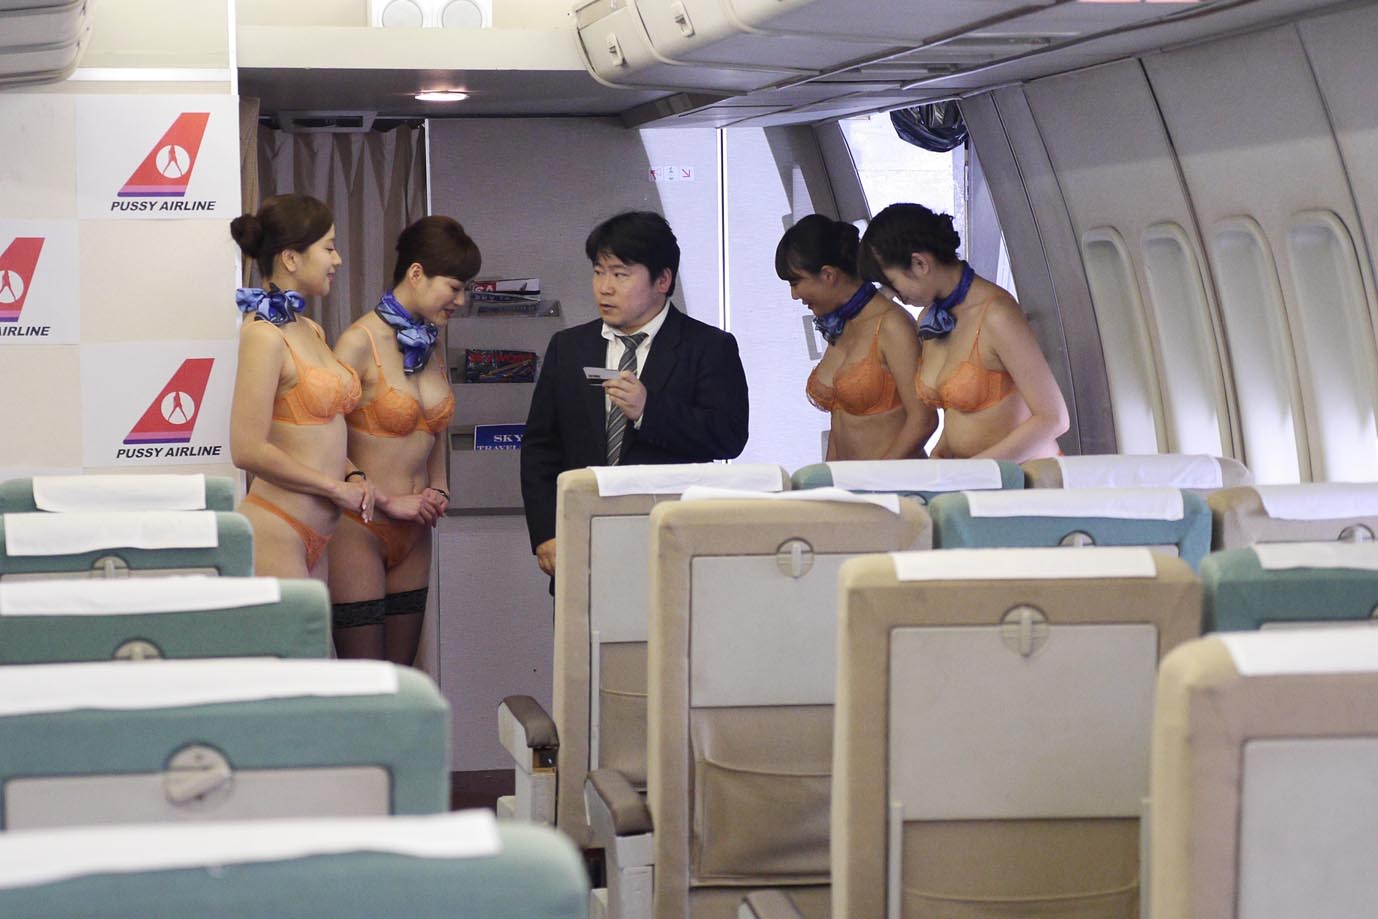 эротика от японских стюардесс фото 25